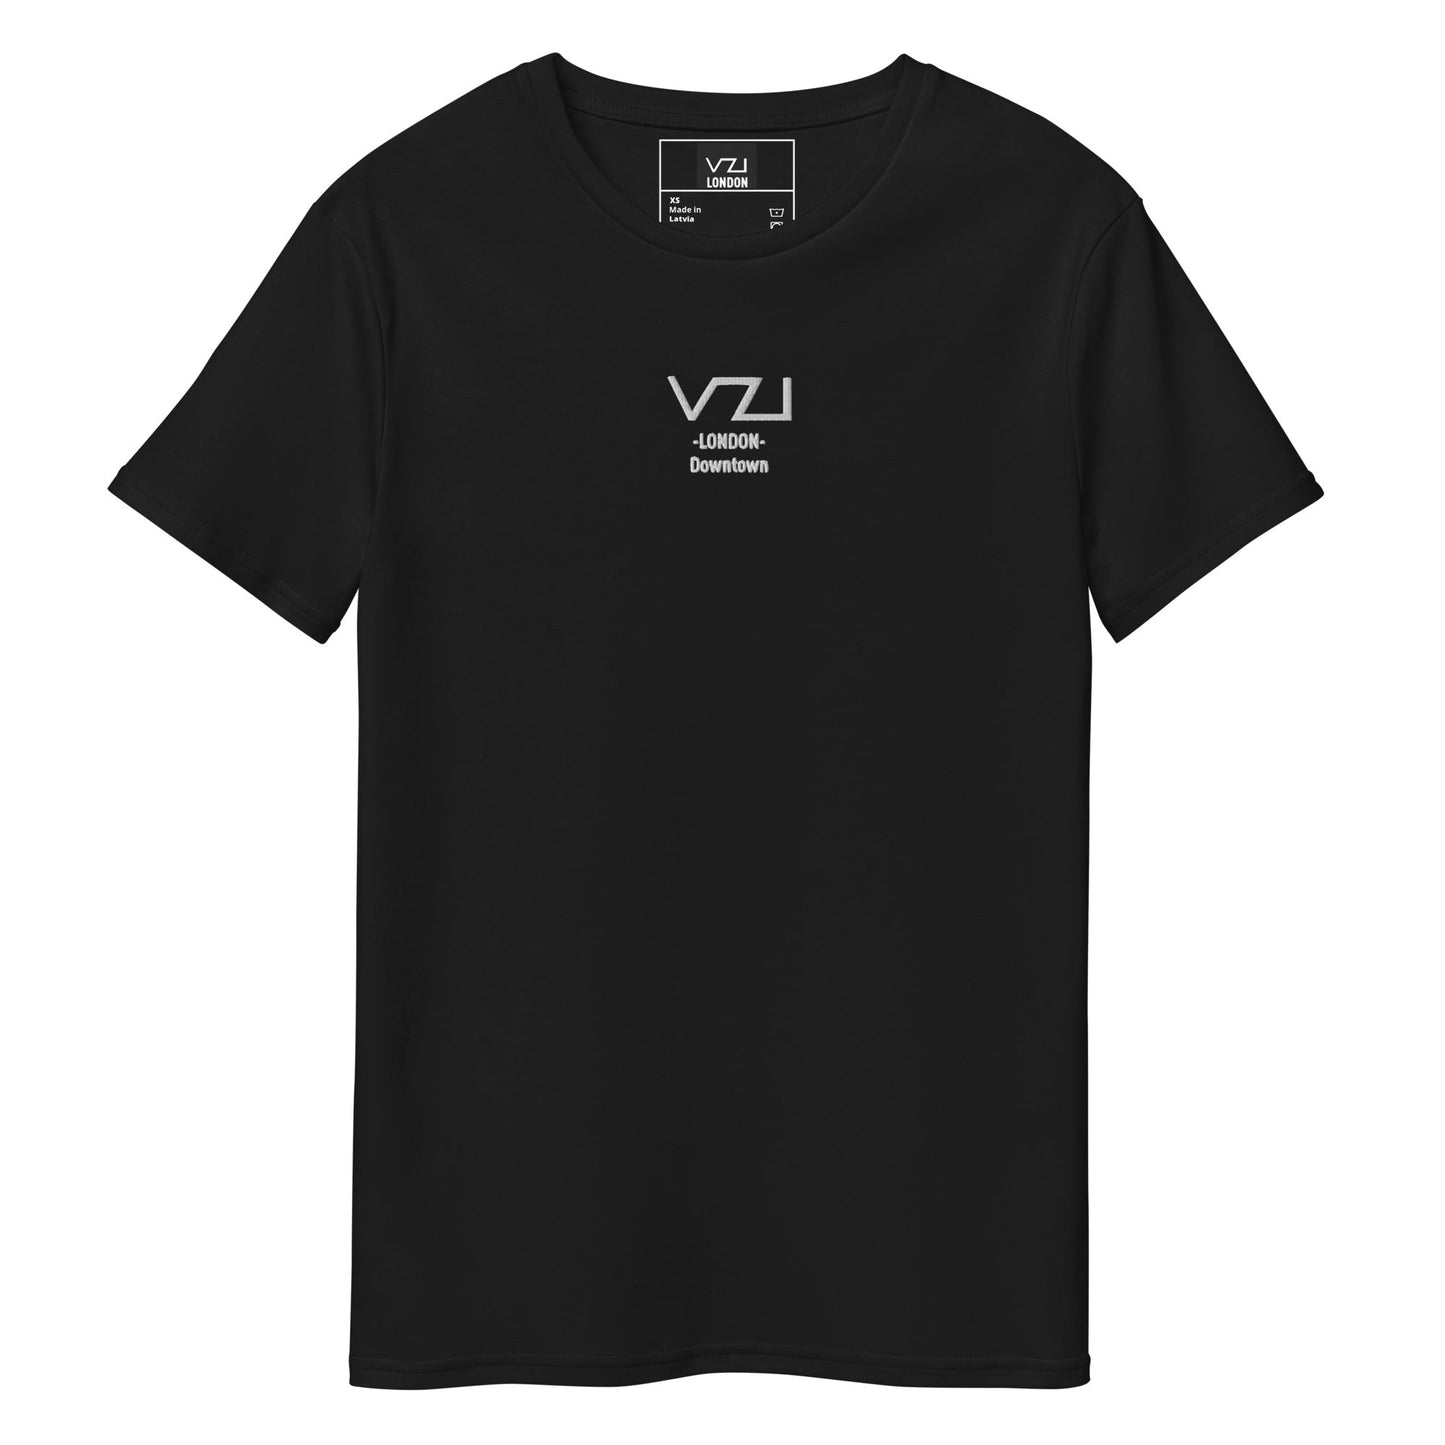 VZI LONDON: T-Shirt For Men's - Premium Cotton - Downtown - Vazzari Couture